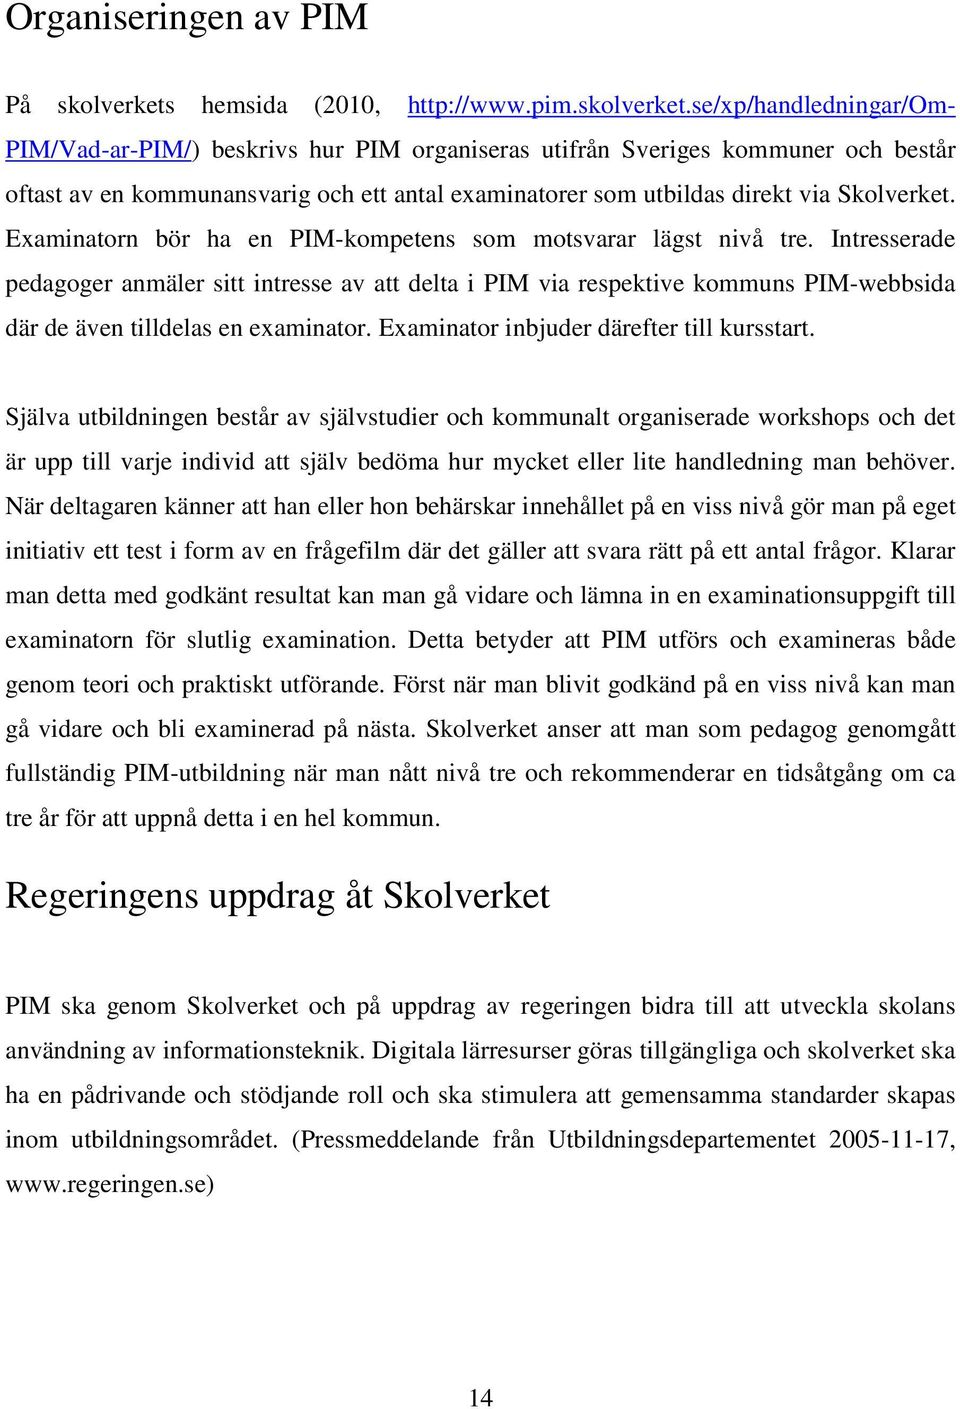 se/xp/handledningar/om- PIM/Vad-ar-PIM/) beskrivs hur PIM organiseras utifrån Sveriges kommuner och består oftast av en kommunansvarig och ett antal examinatorer som utbildas direkt via Skolverket.